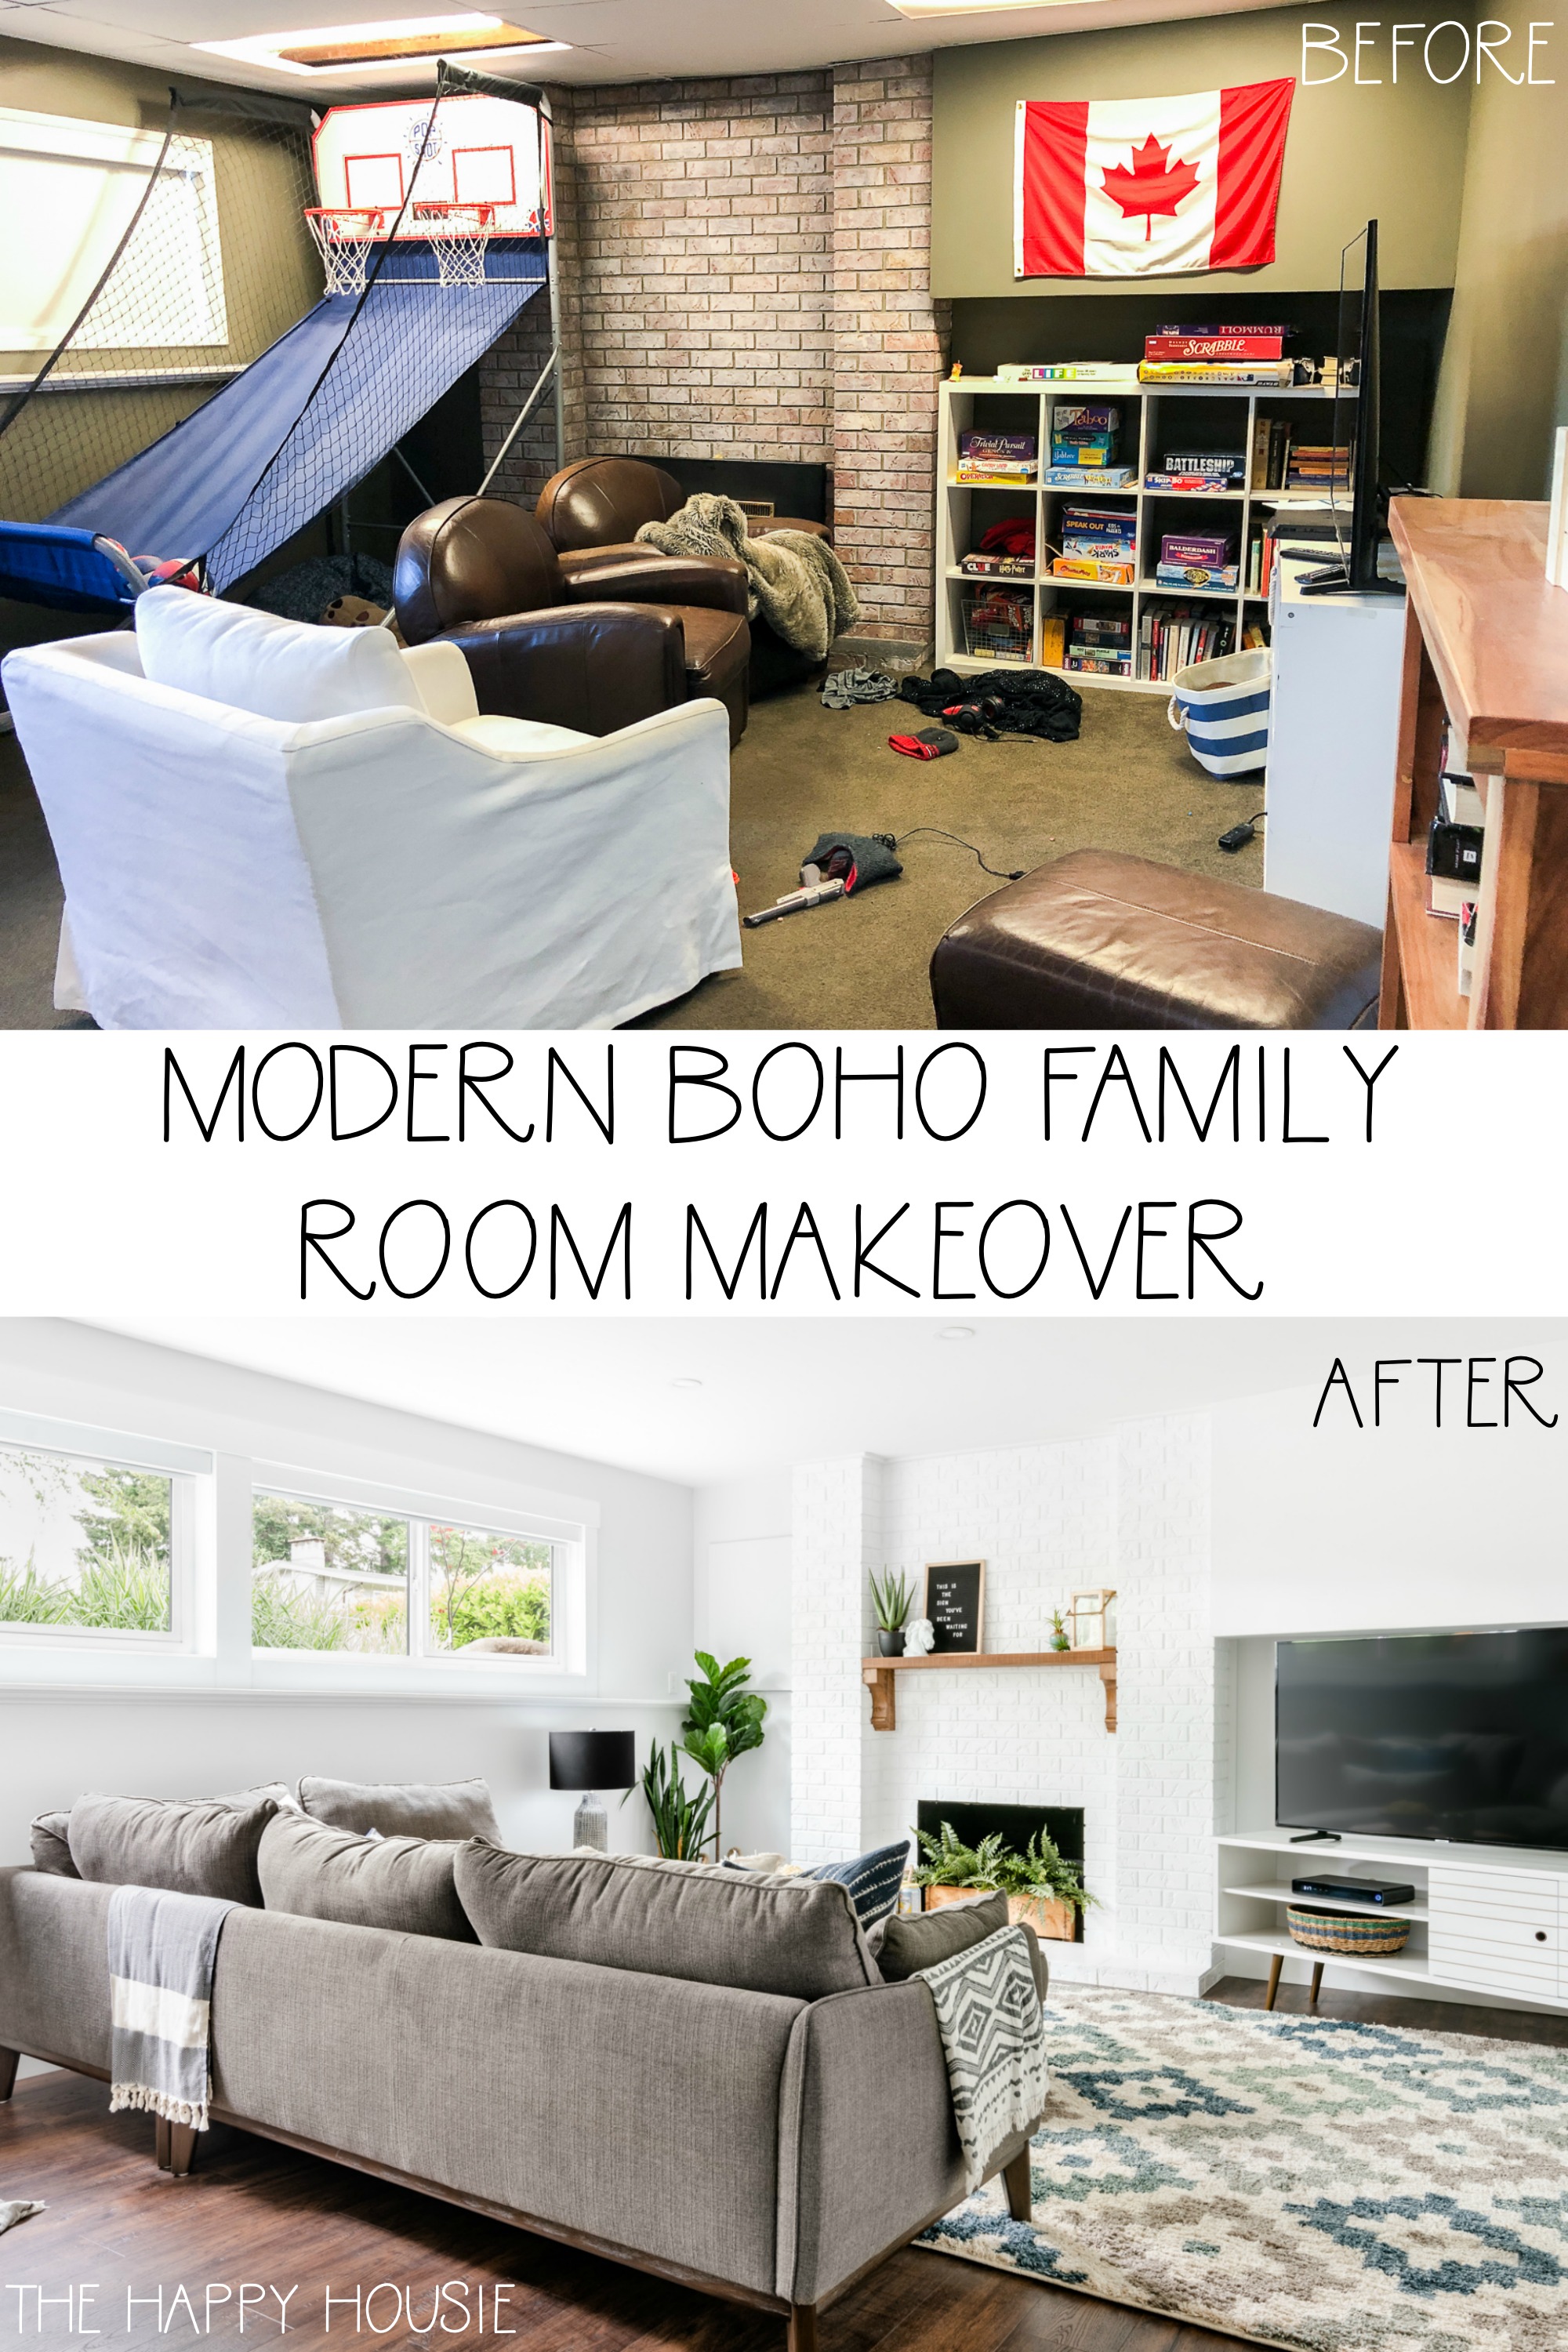 Modern boho family room makeover graphic.